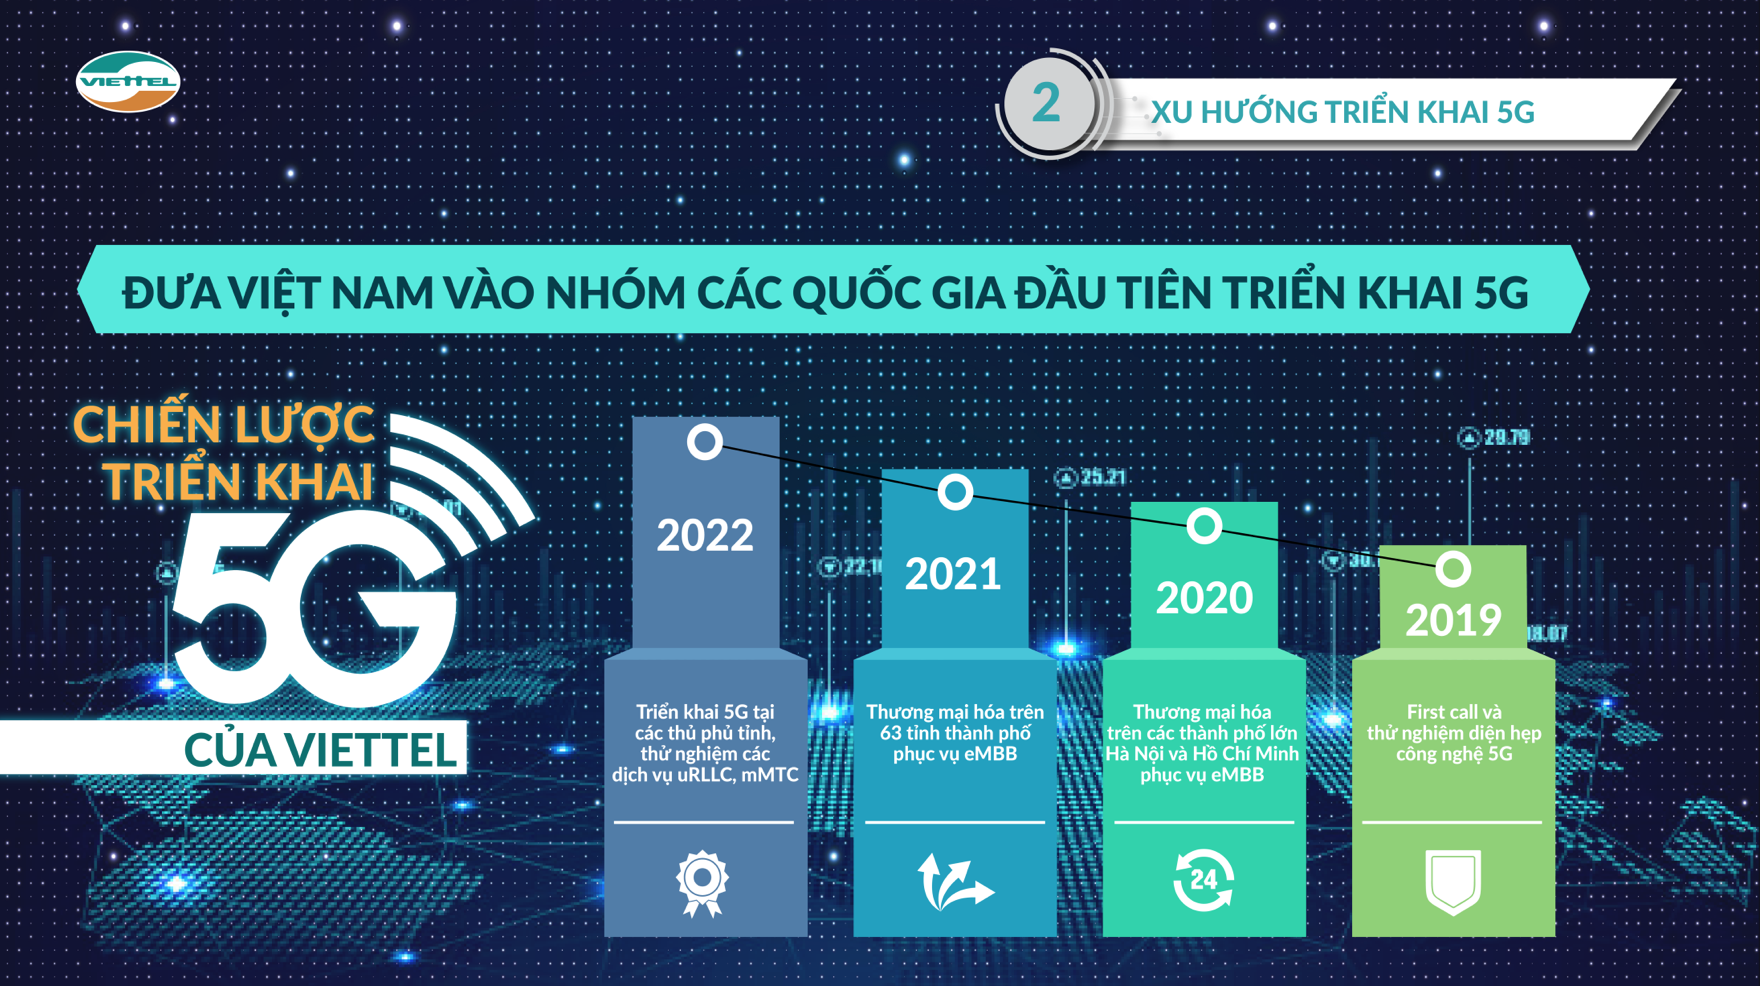 5G sẽ được thương mại hóa vào năm 2020. (Nguồn: Viettel)